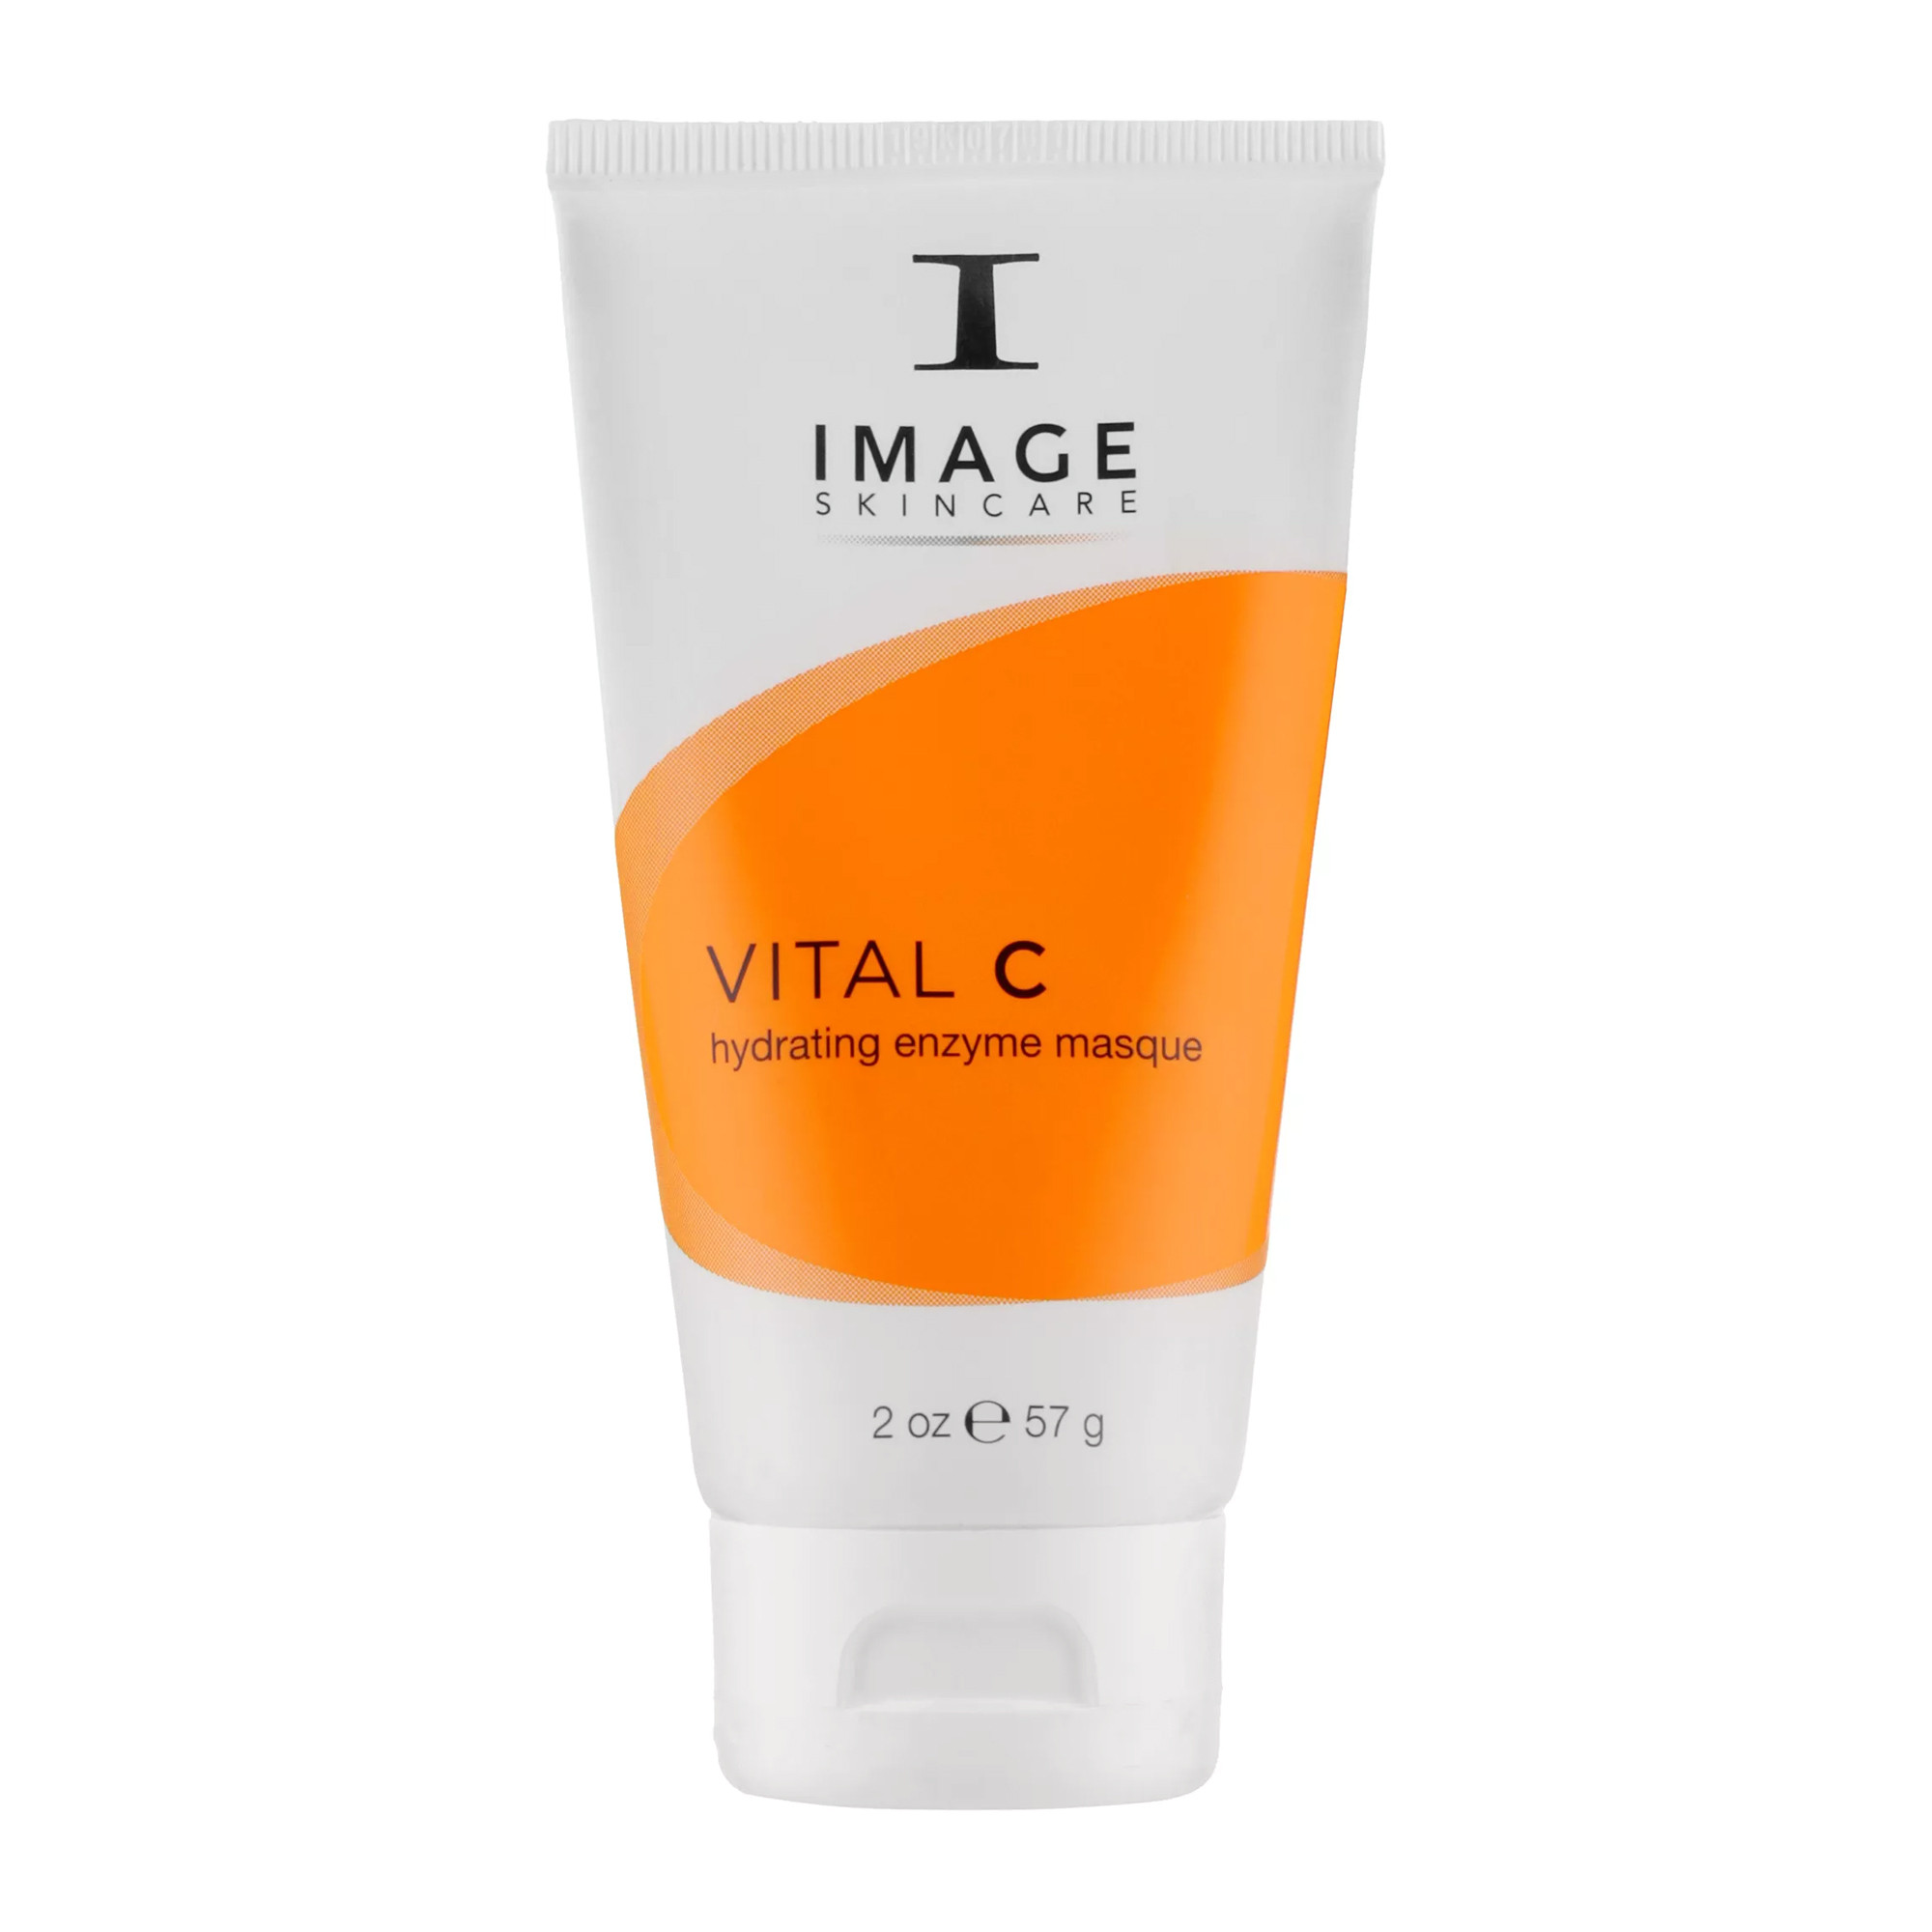 Энзимная маска Image Skincare Vital C Hydrating Enzyme Masque